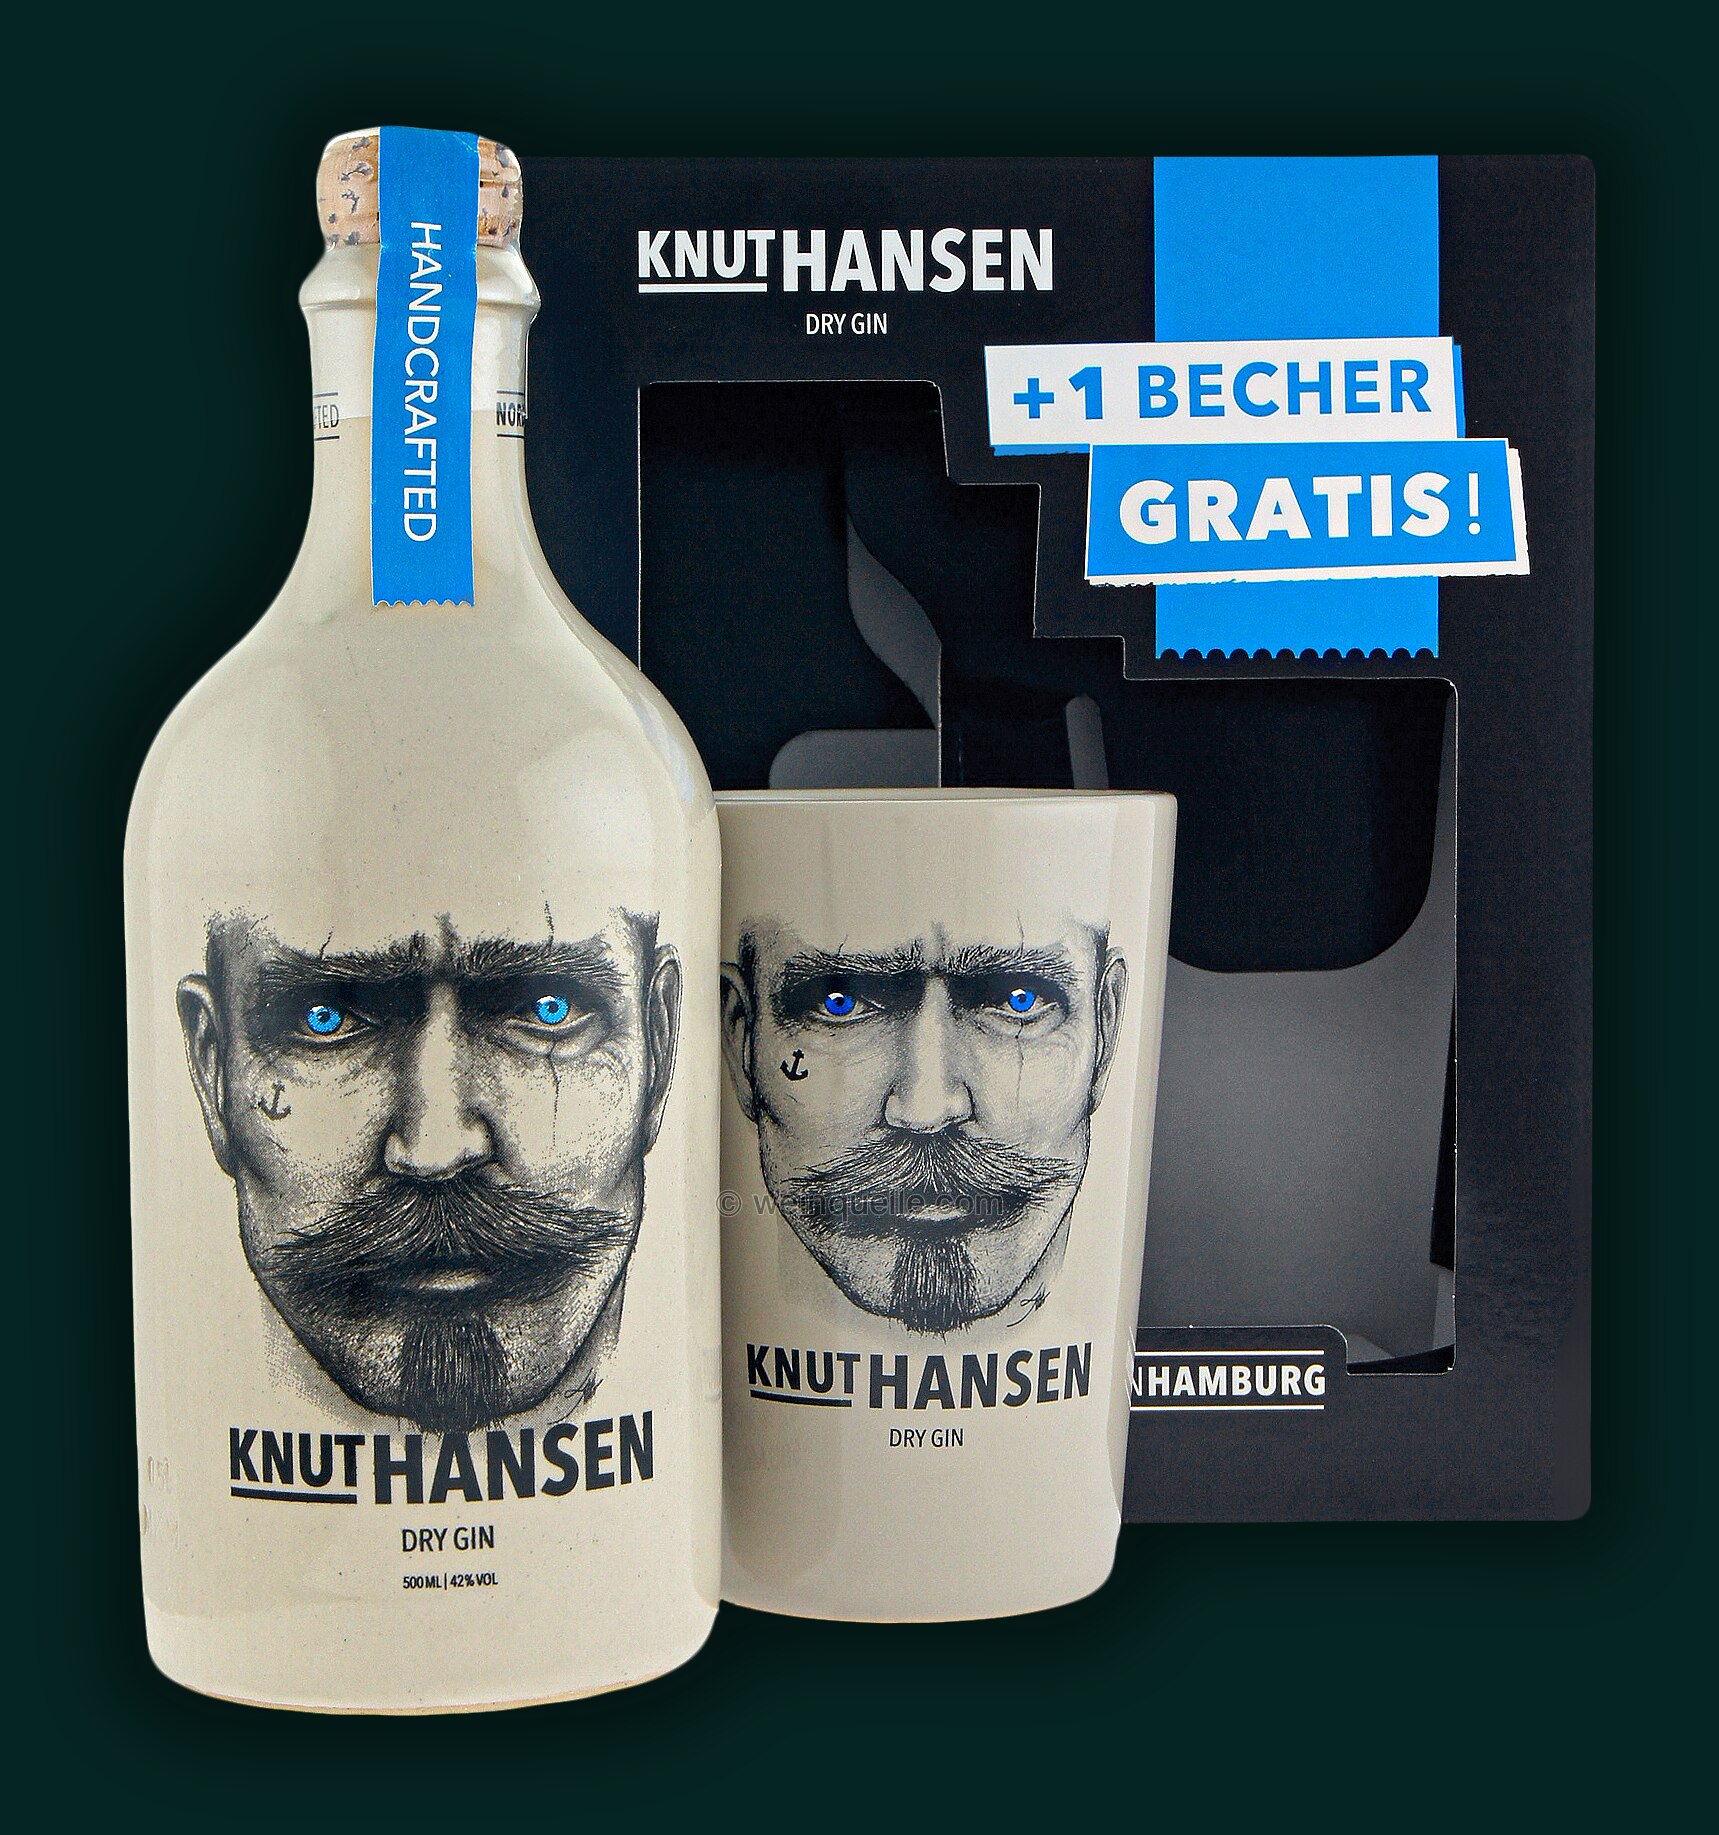 in GP Hansen 1 Lühmann - Gin Knut Dry Becher Weinquelle +